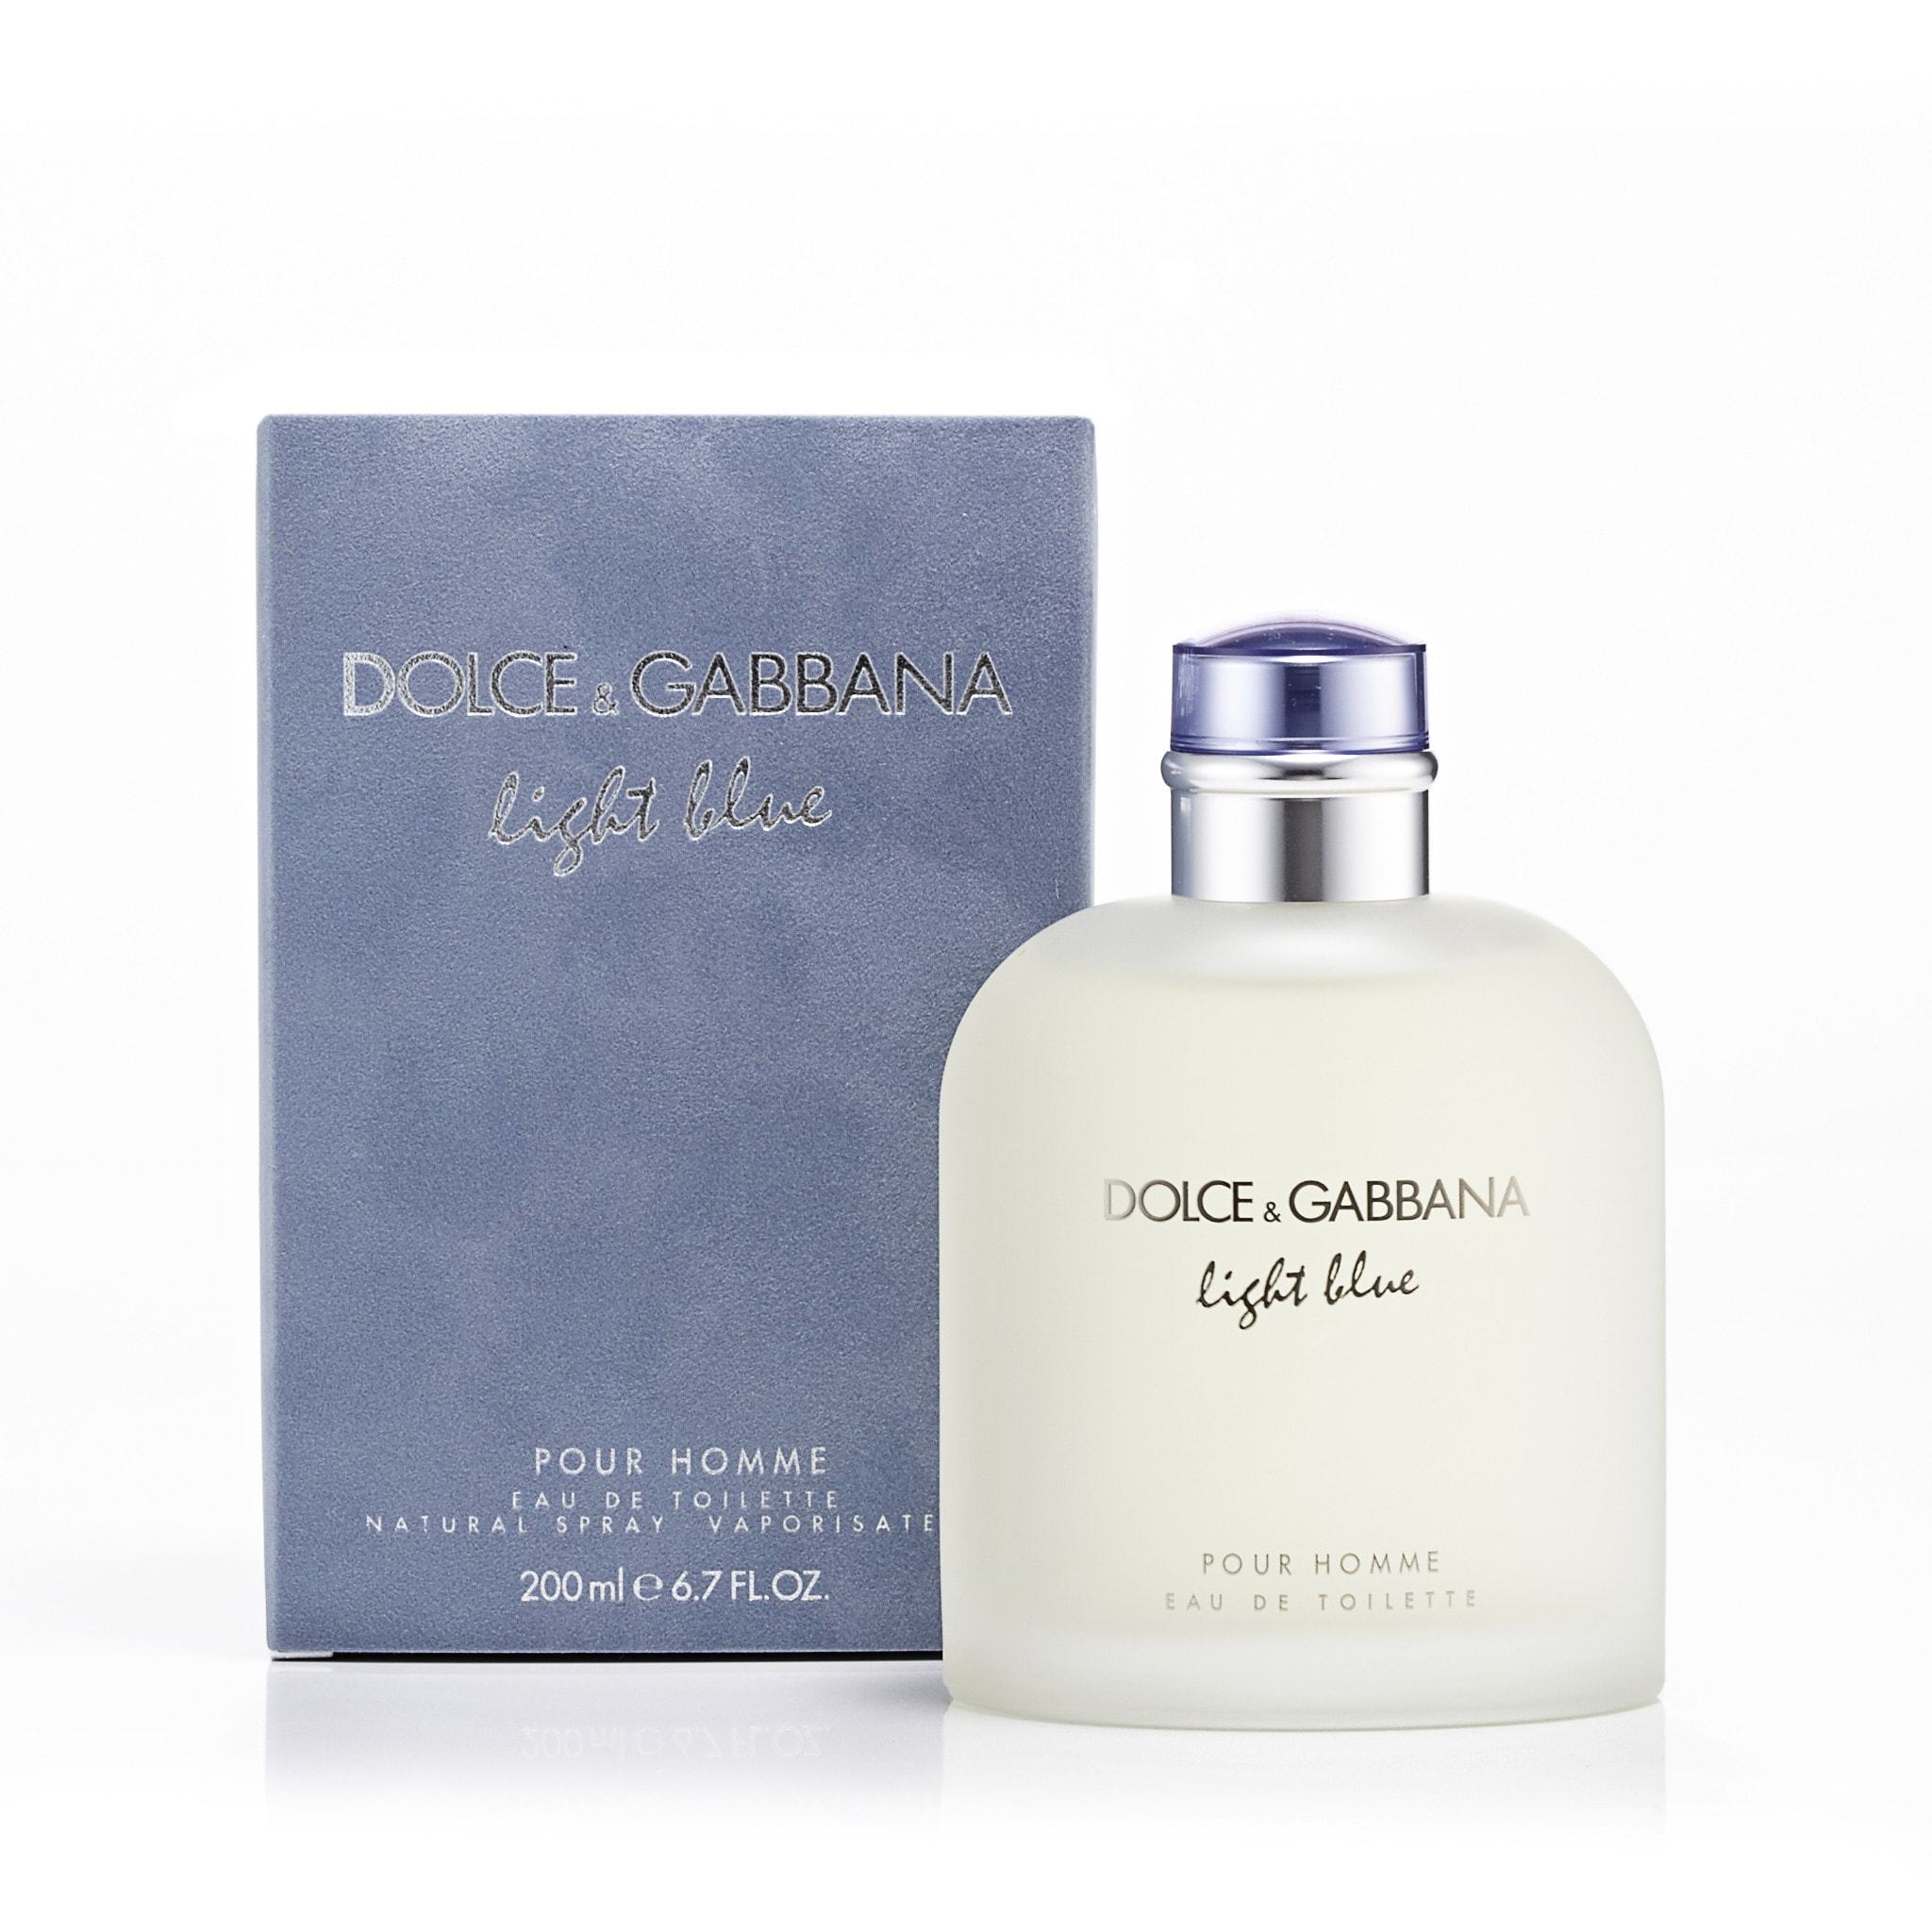 http://perfumania.com/cdn/shop/products/Dolce-and-Gabbana-Light-Blue-Mens-Eau-de-Toilette-EDT-S-6.7-oz.-Best-Price-Fragrance-Parfume-FragranceOutlet.com-Details.jpg?v=1579724292